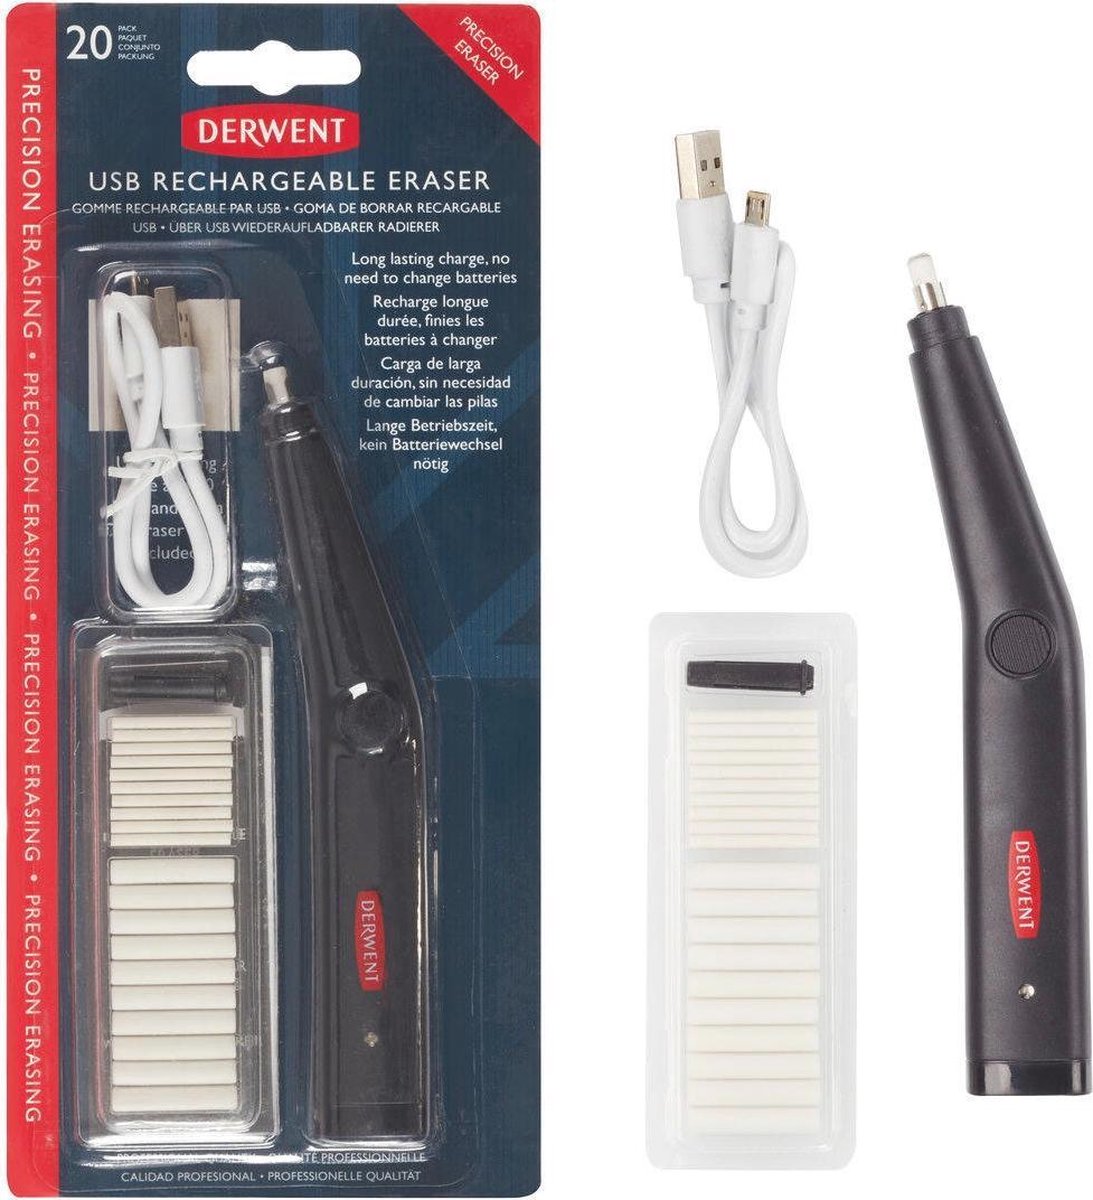 Derwent - USB Rechargable Eraser - Derwent